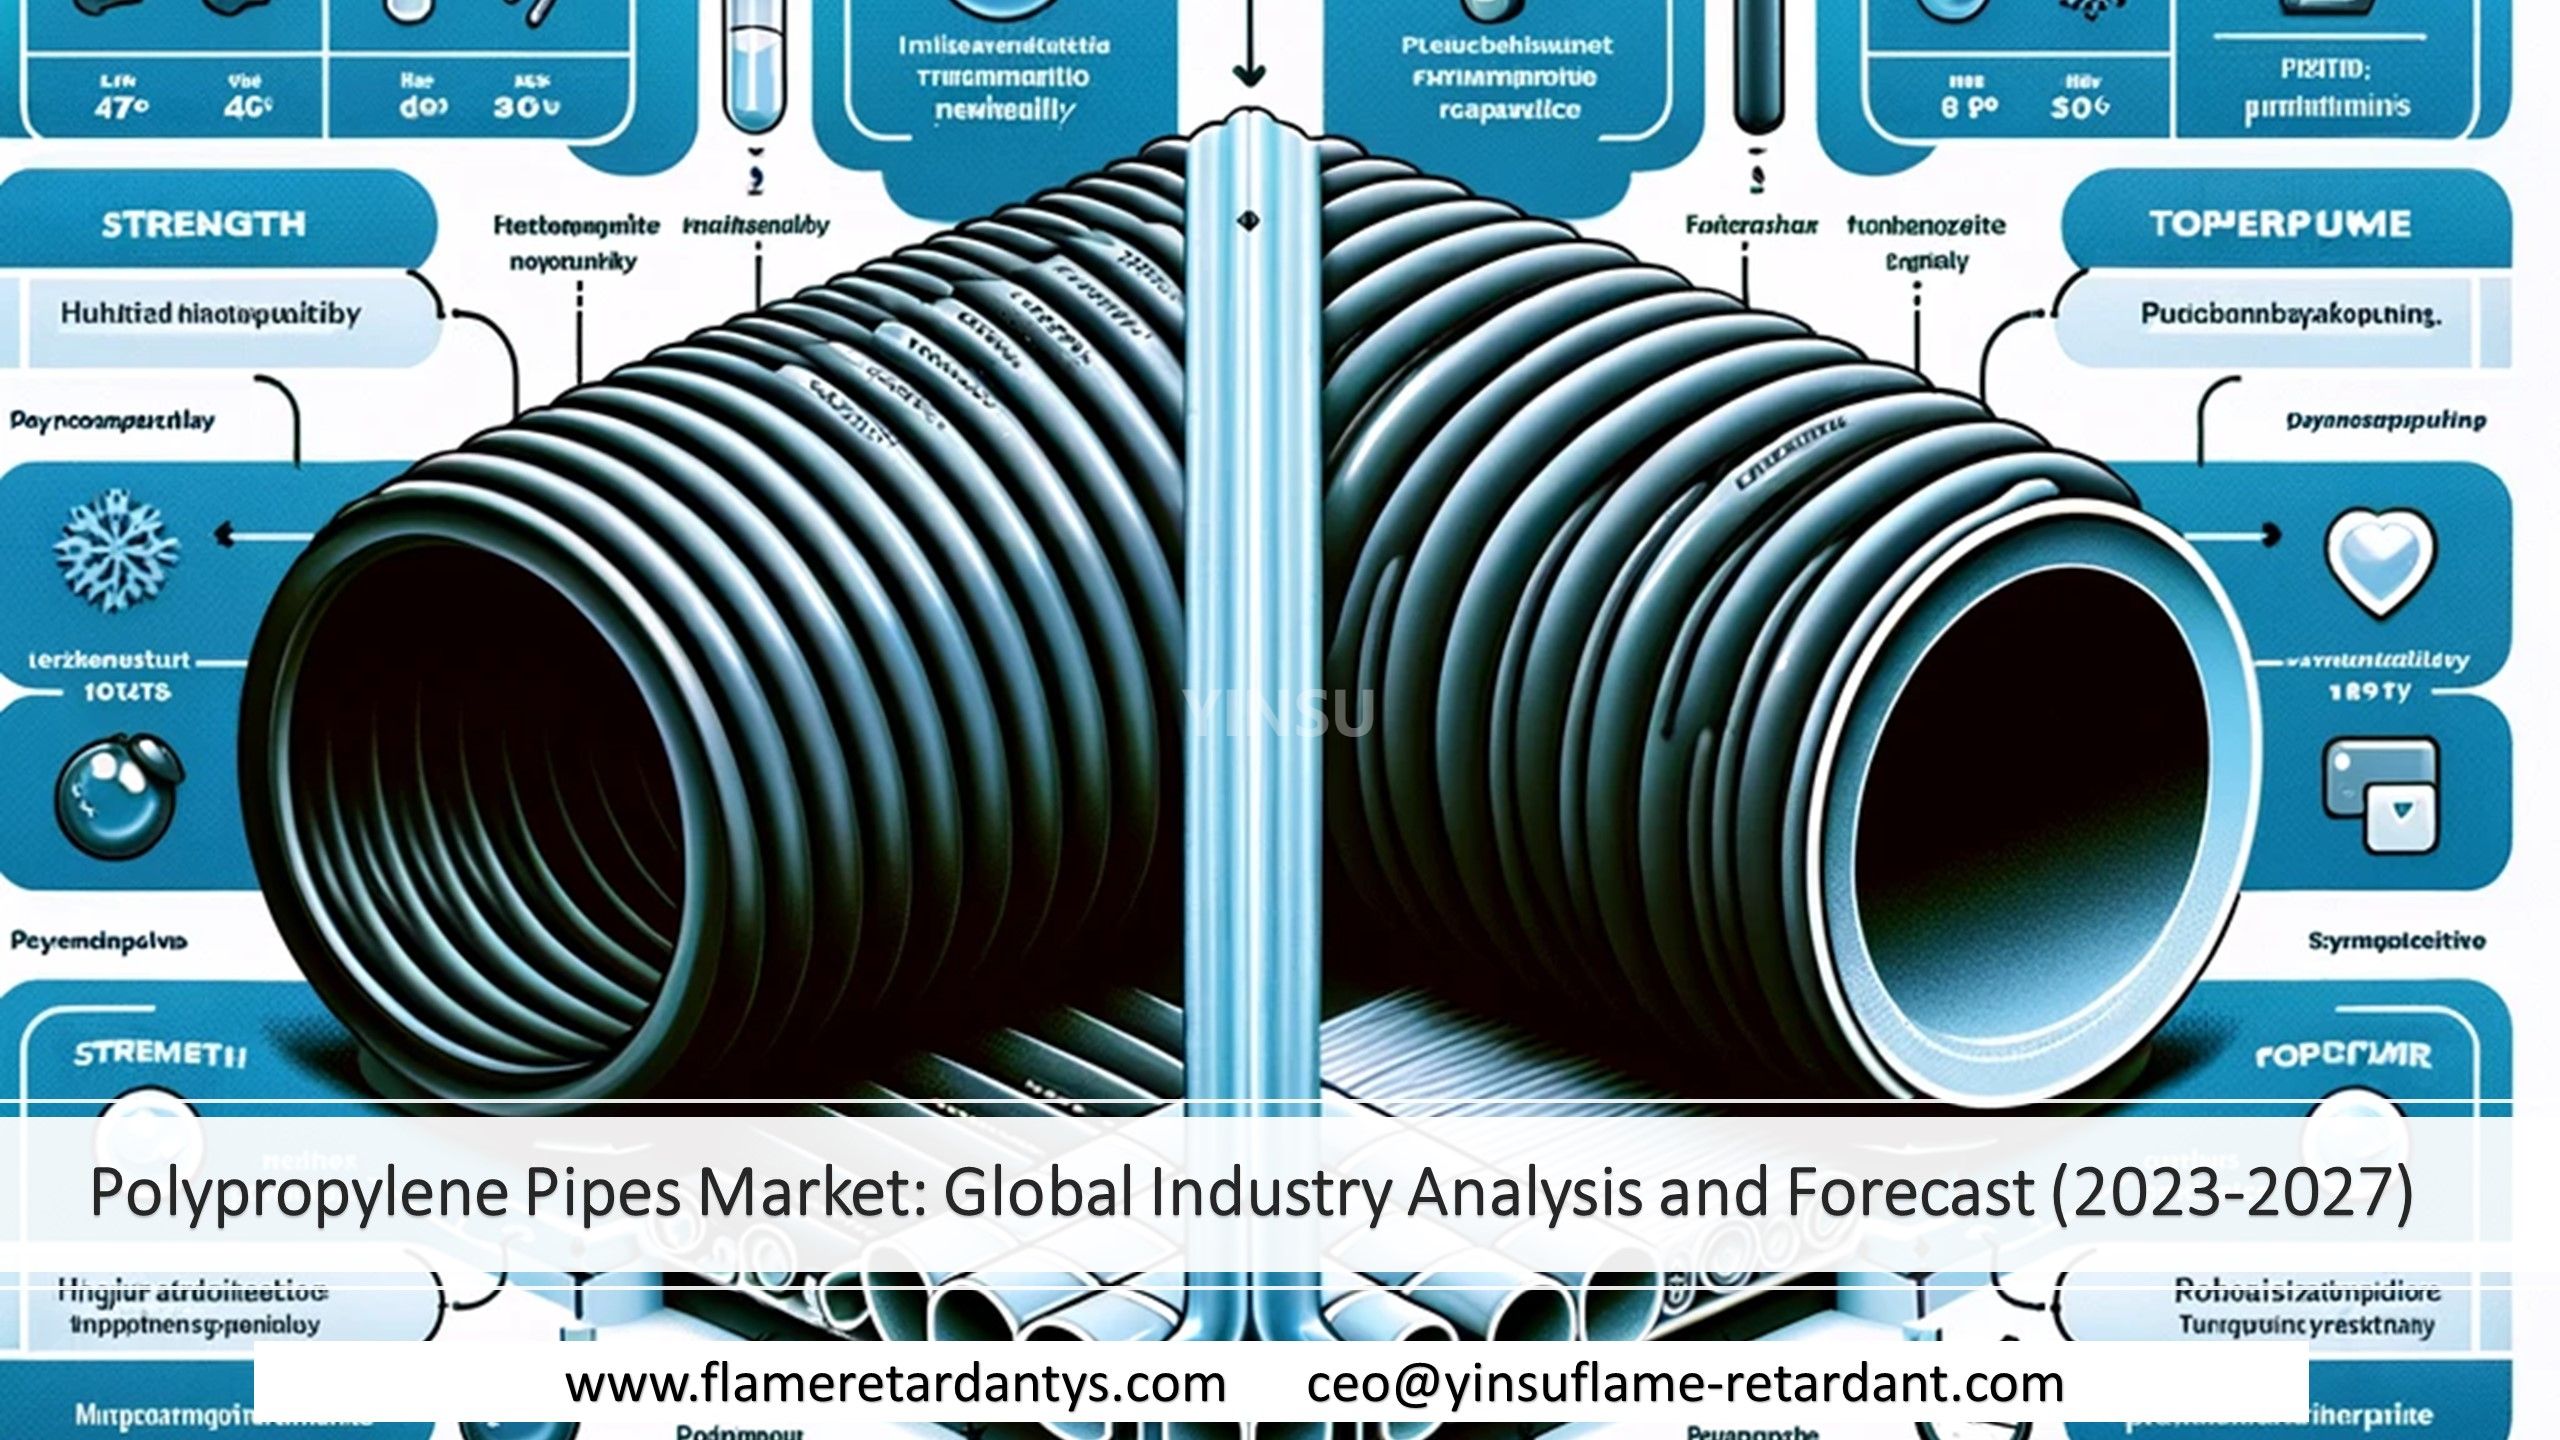 Mercado de tuberías de polipropileno: análisis y pronóstico de la industria global (2023-2027)